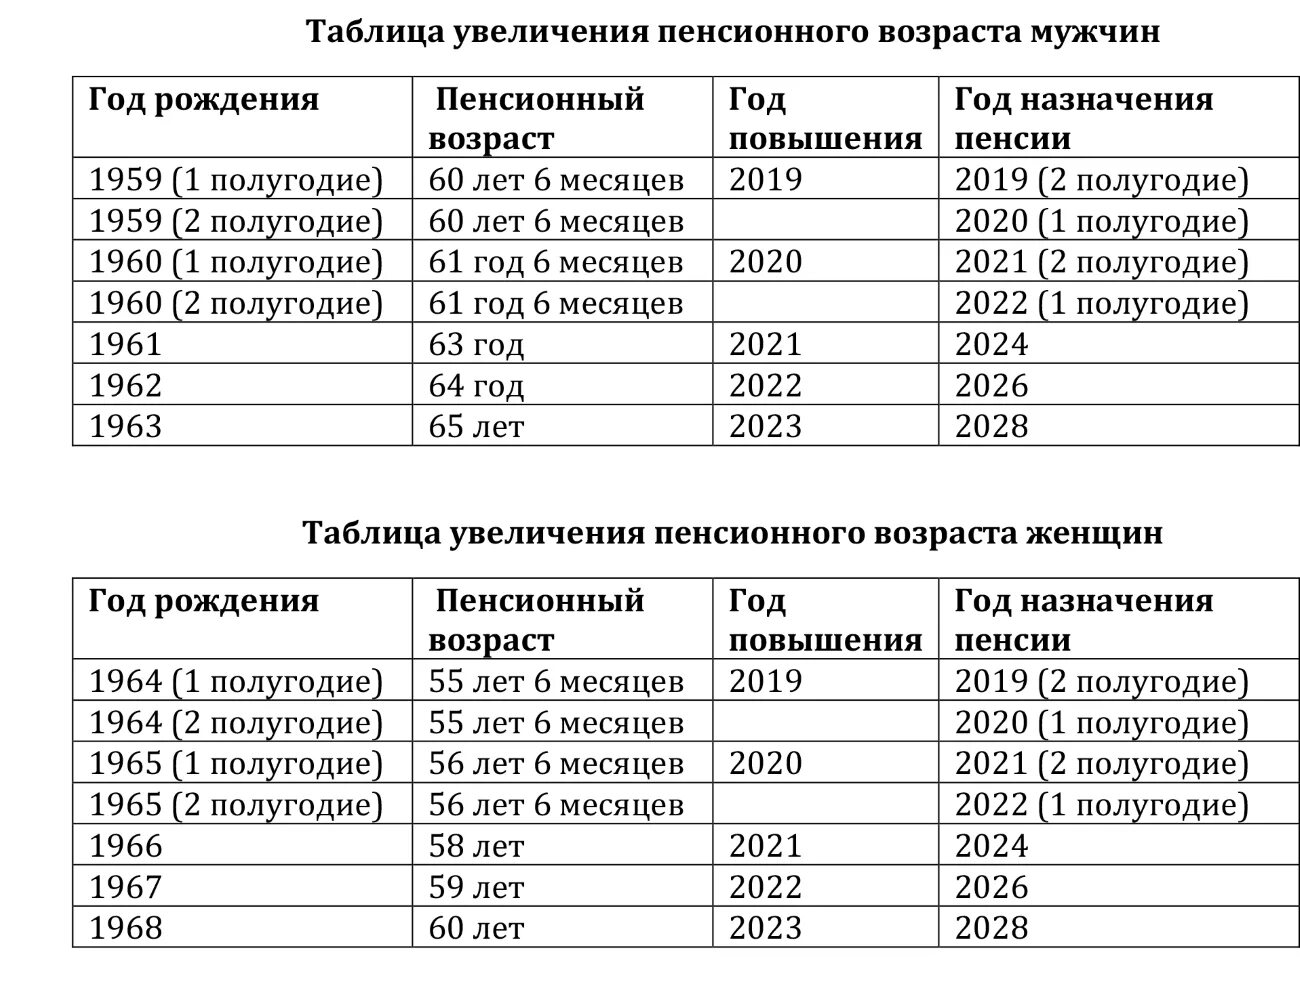 Повышение пенсионного возраста таблица. Пенсионный Возраст в России таблица по годам. Таблица прибавки пенсионного возраста по годам. Таблица по возрастам пенсионного возраста.